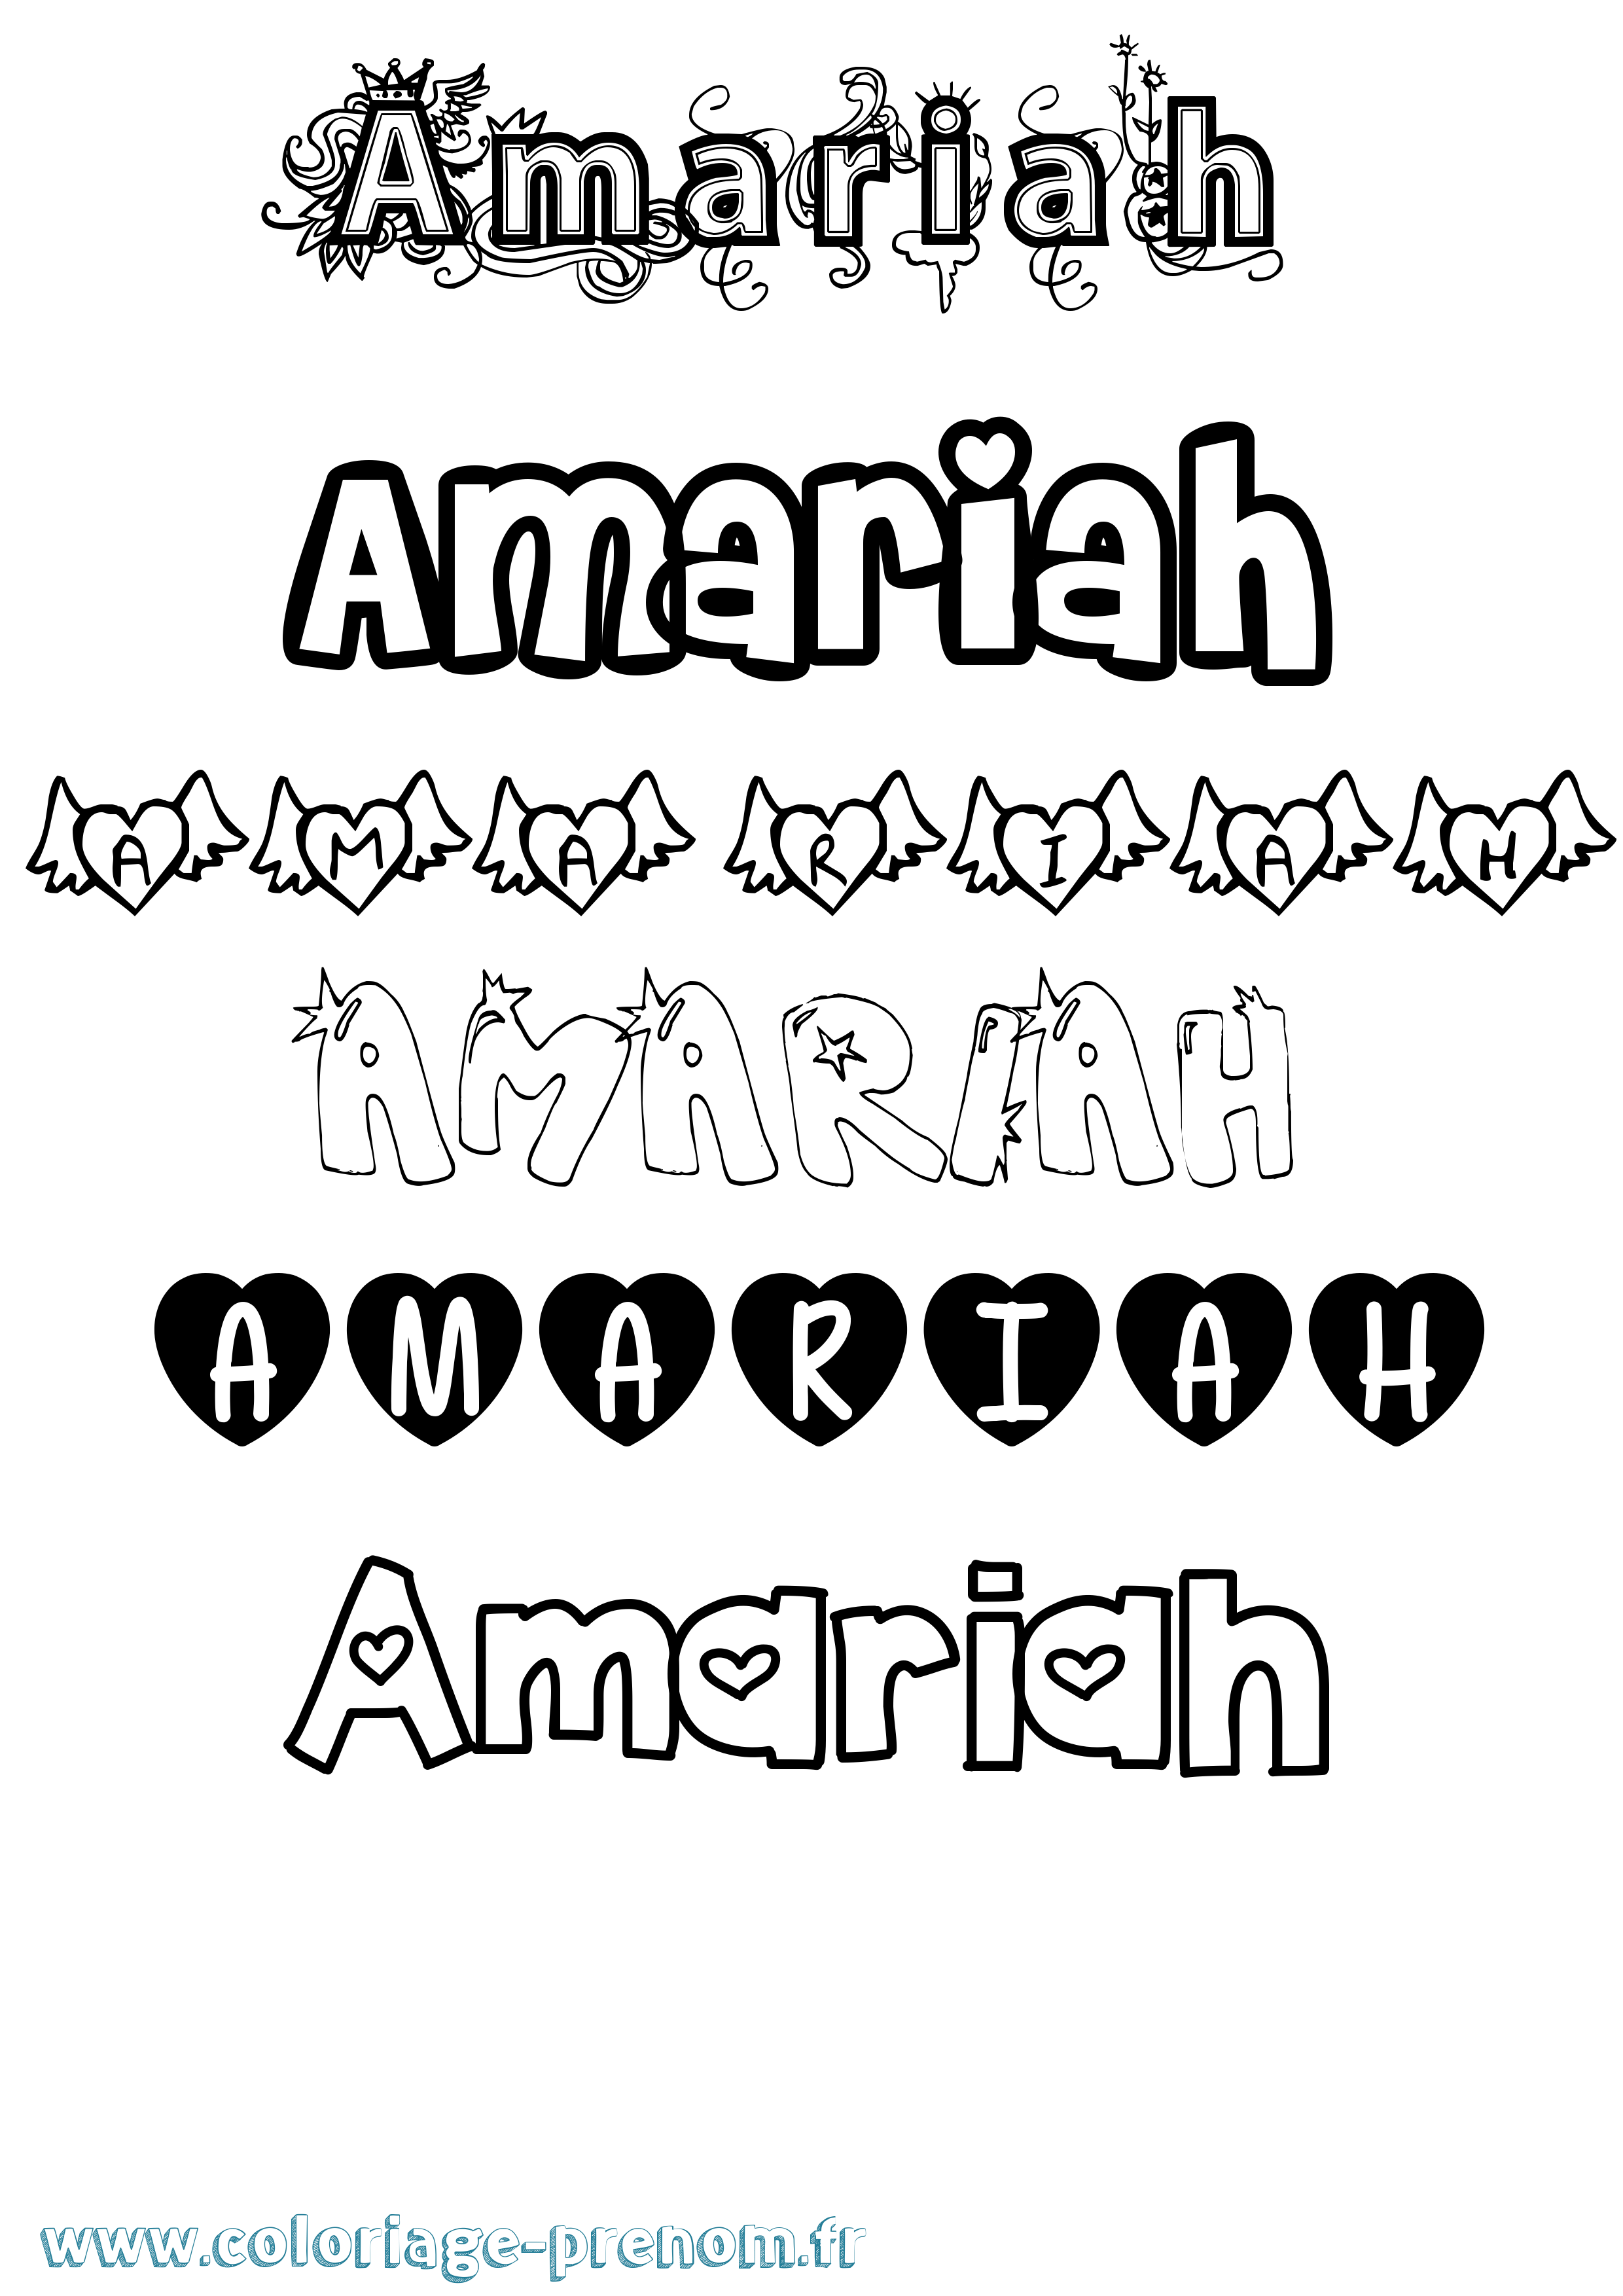 Coloriage prénom Amariah Girly